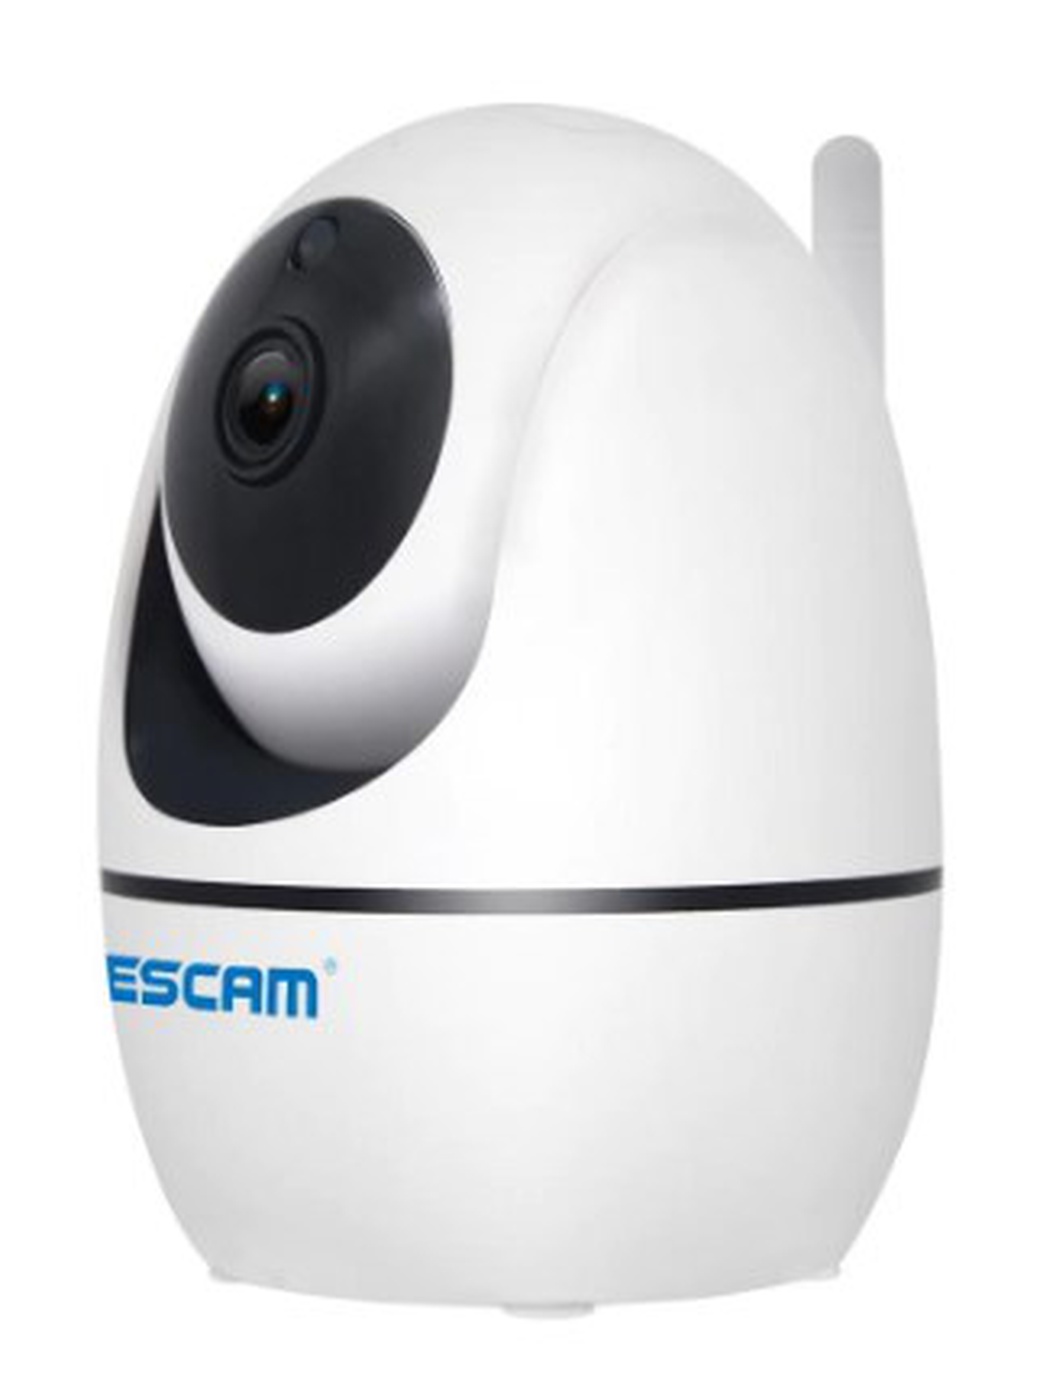 Камера IP Escam PVR008, инфракрасная, H.265, 1080p, белый фото